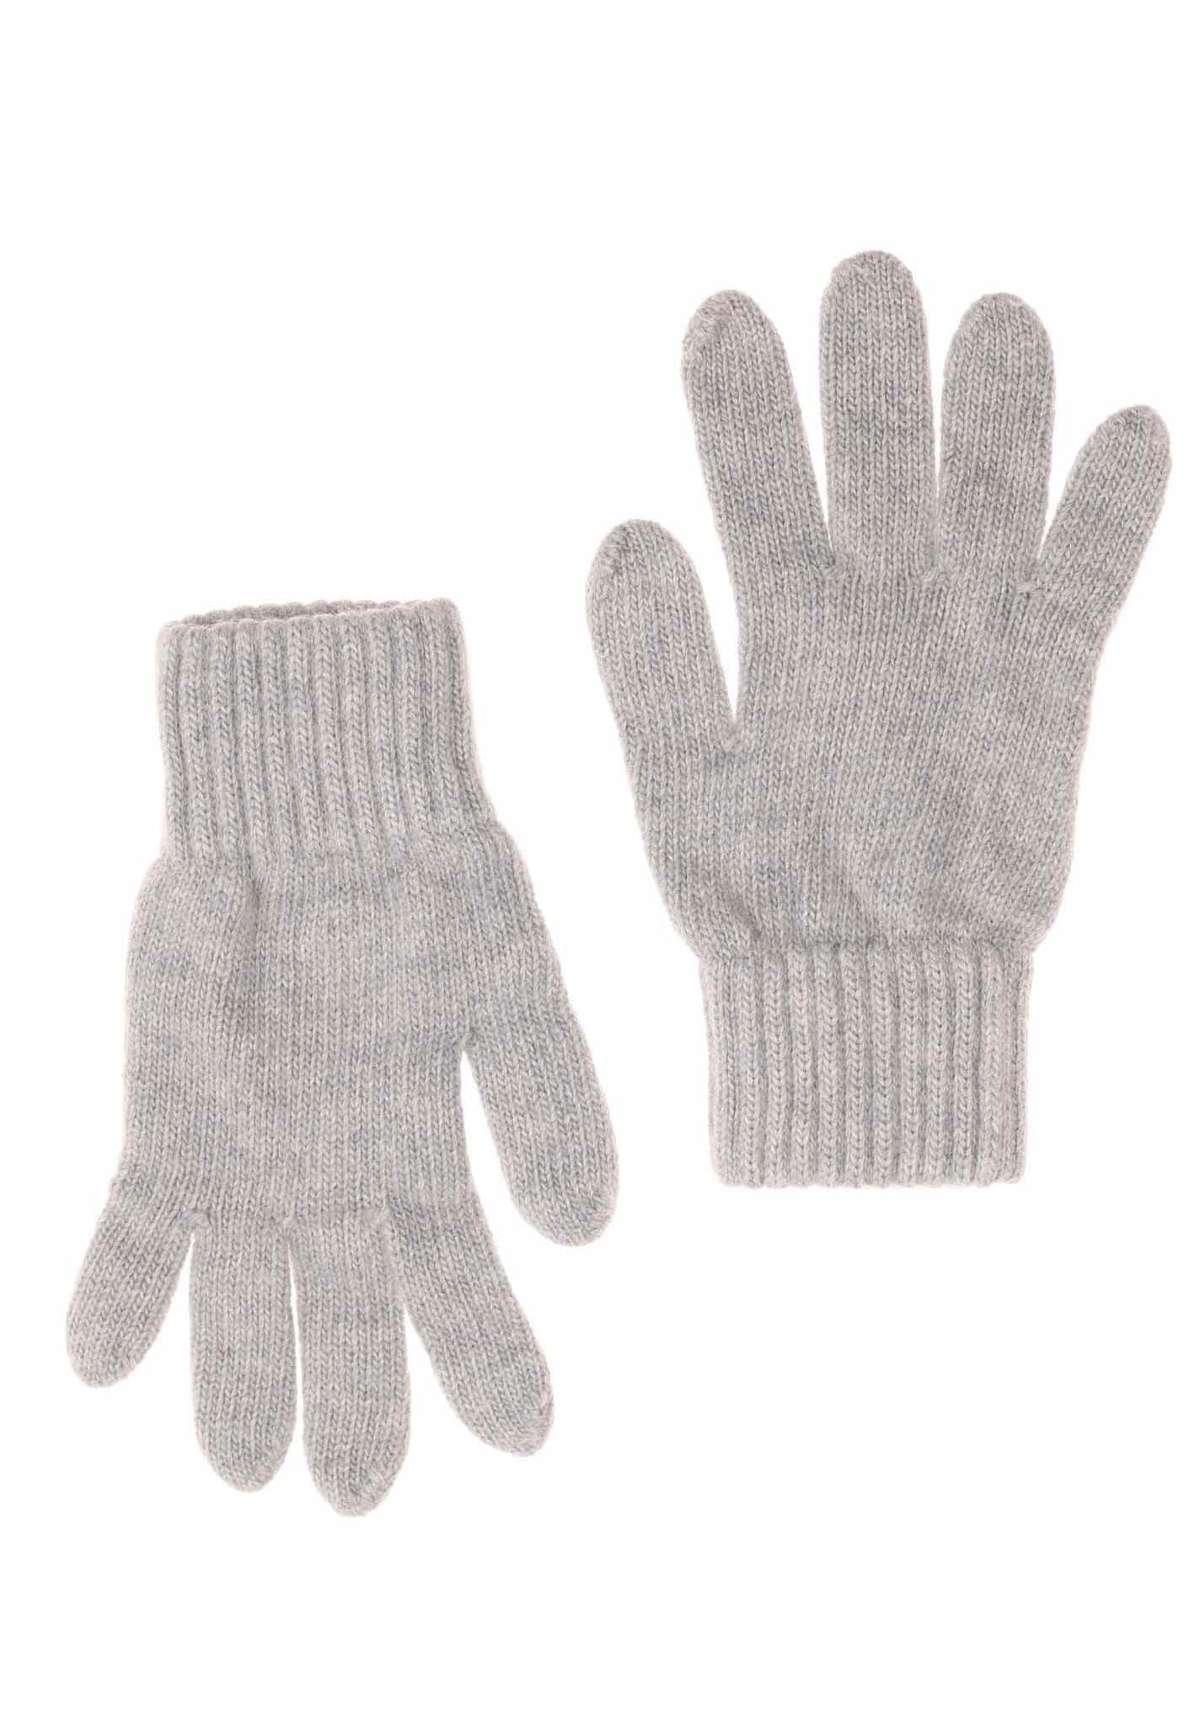 Вязаные перчатки (2 шт.) с содержанием шерсти и кашемира.